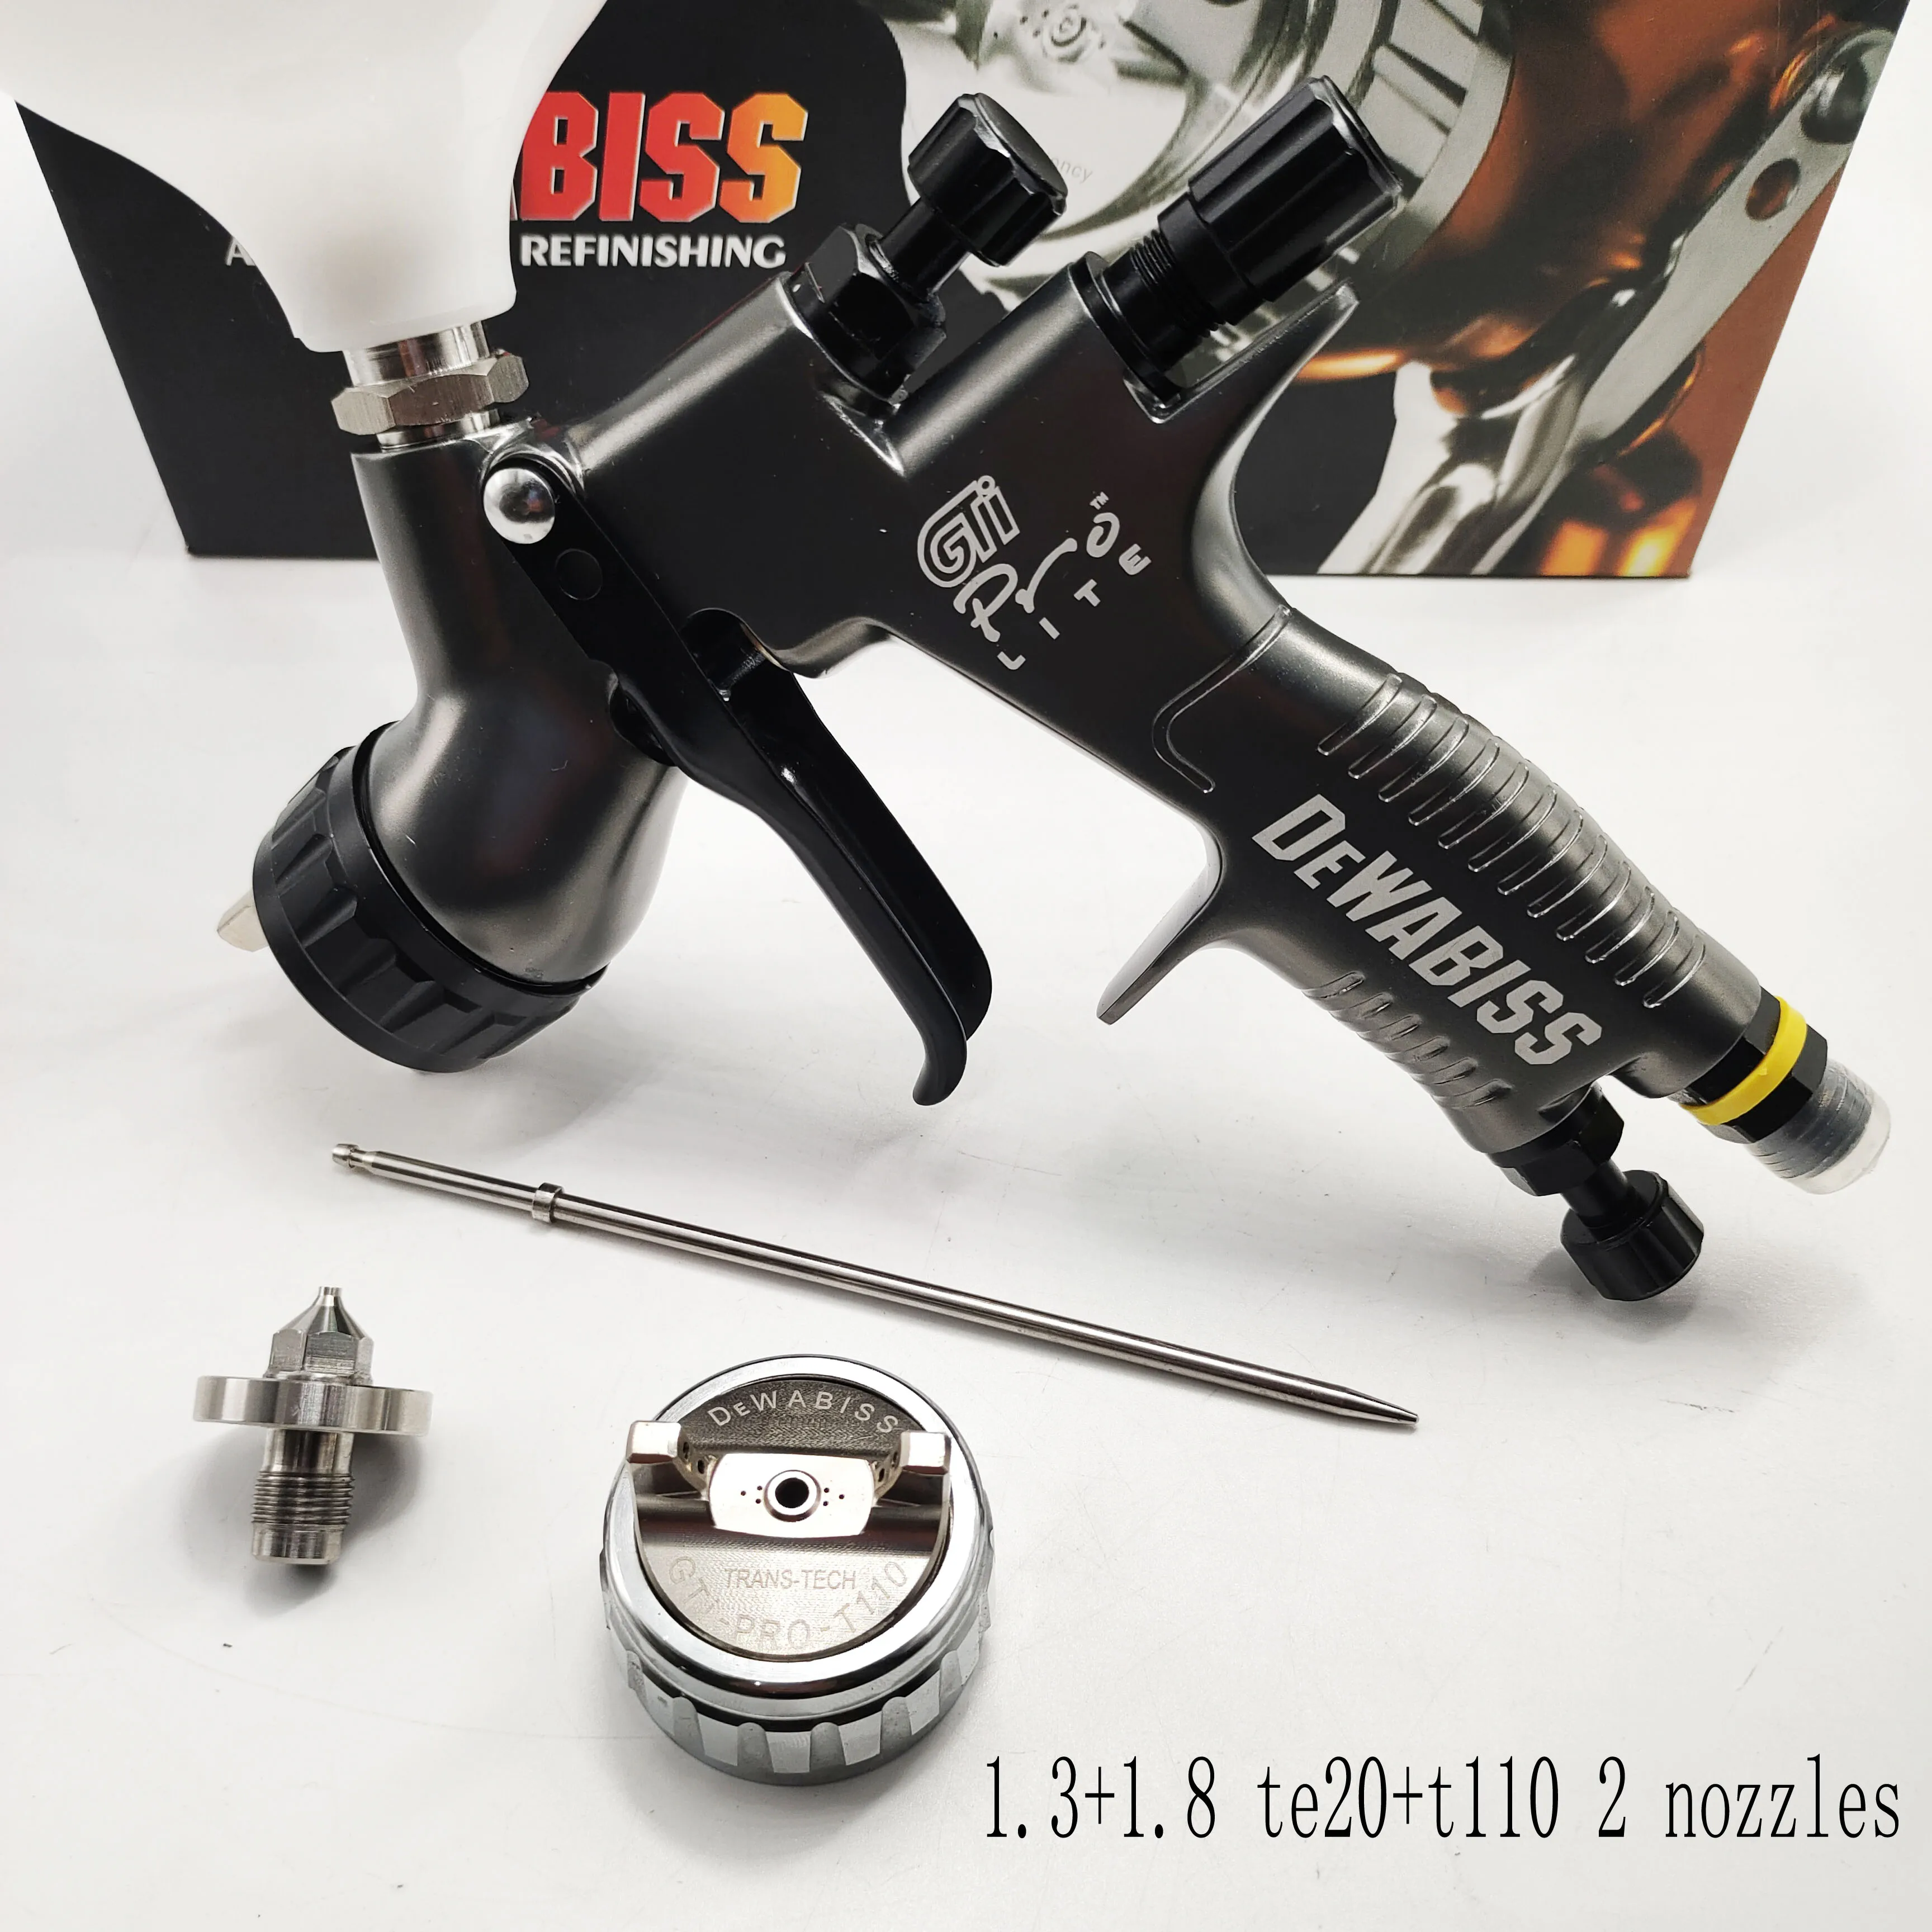 GTI pro spray gun 1.3+1.8 te20+t110 2 Nozzles dewabiss car painting tool high Atomization air paint sprayer airbrush gun